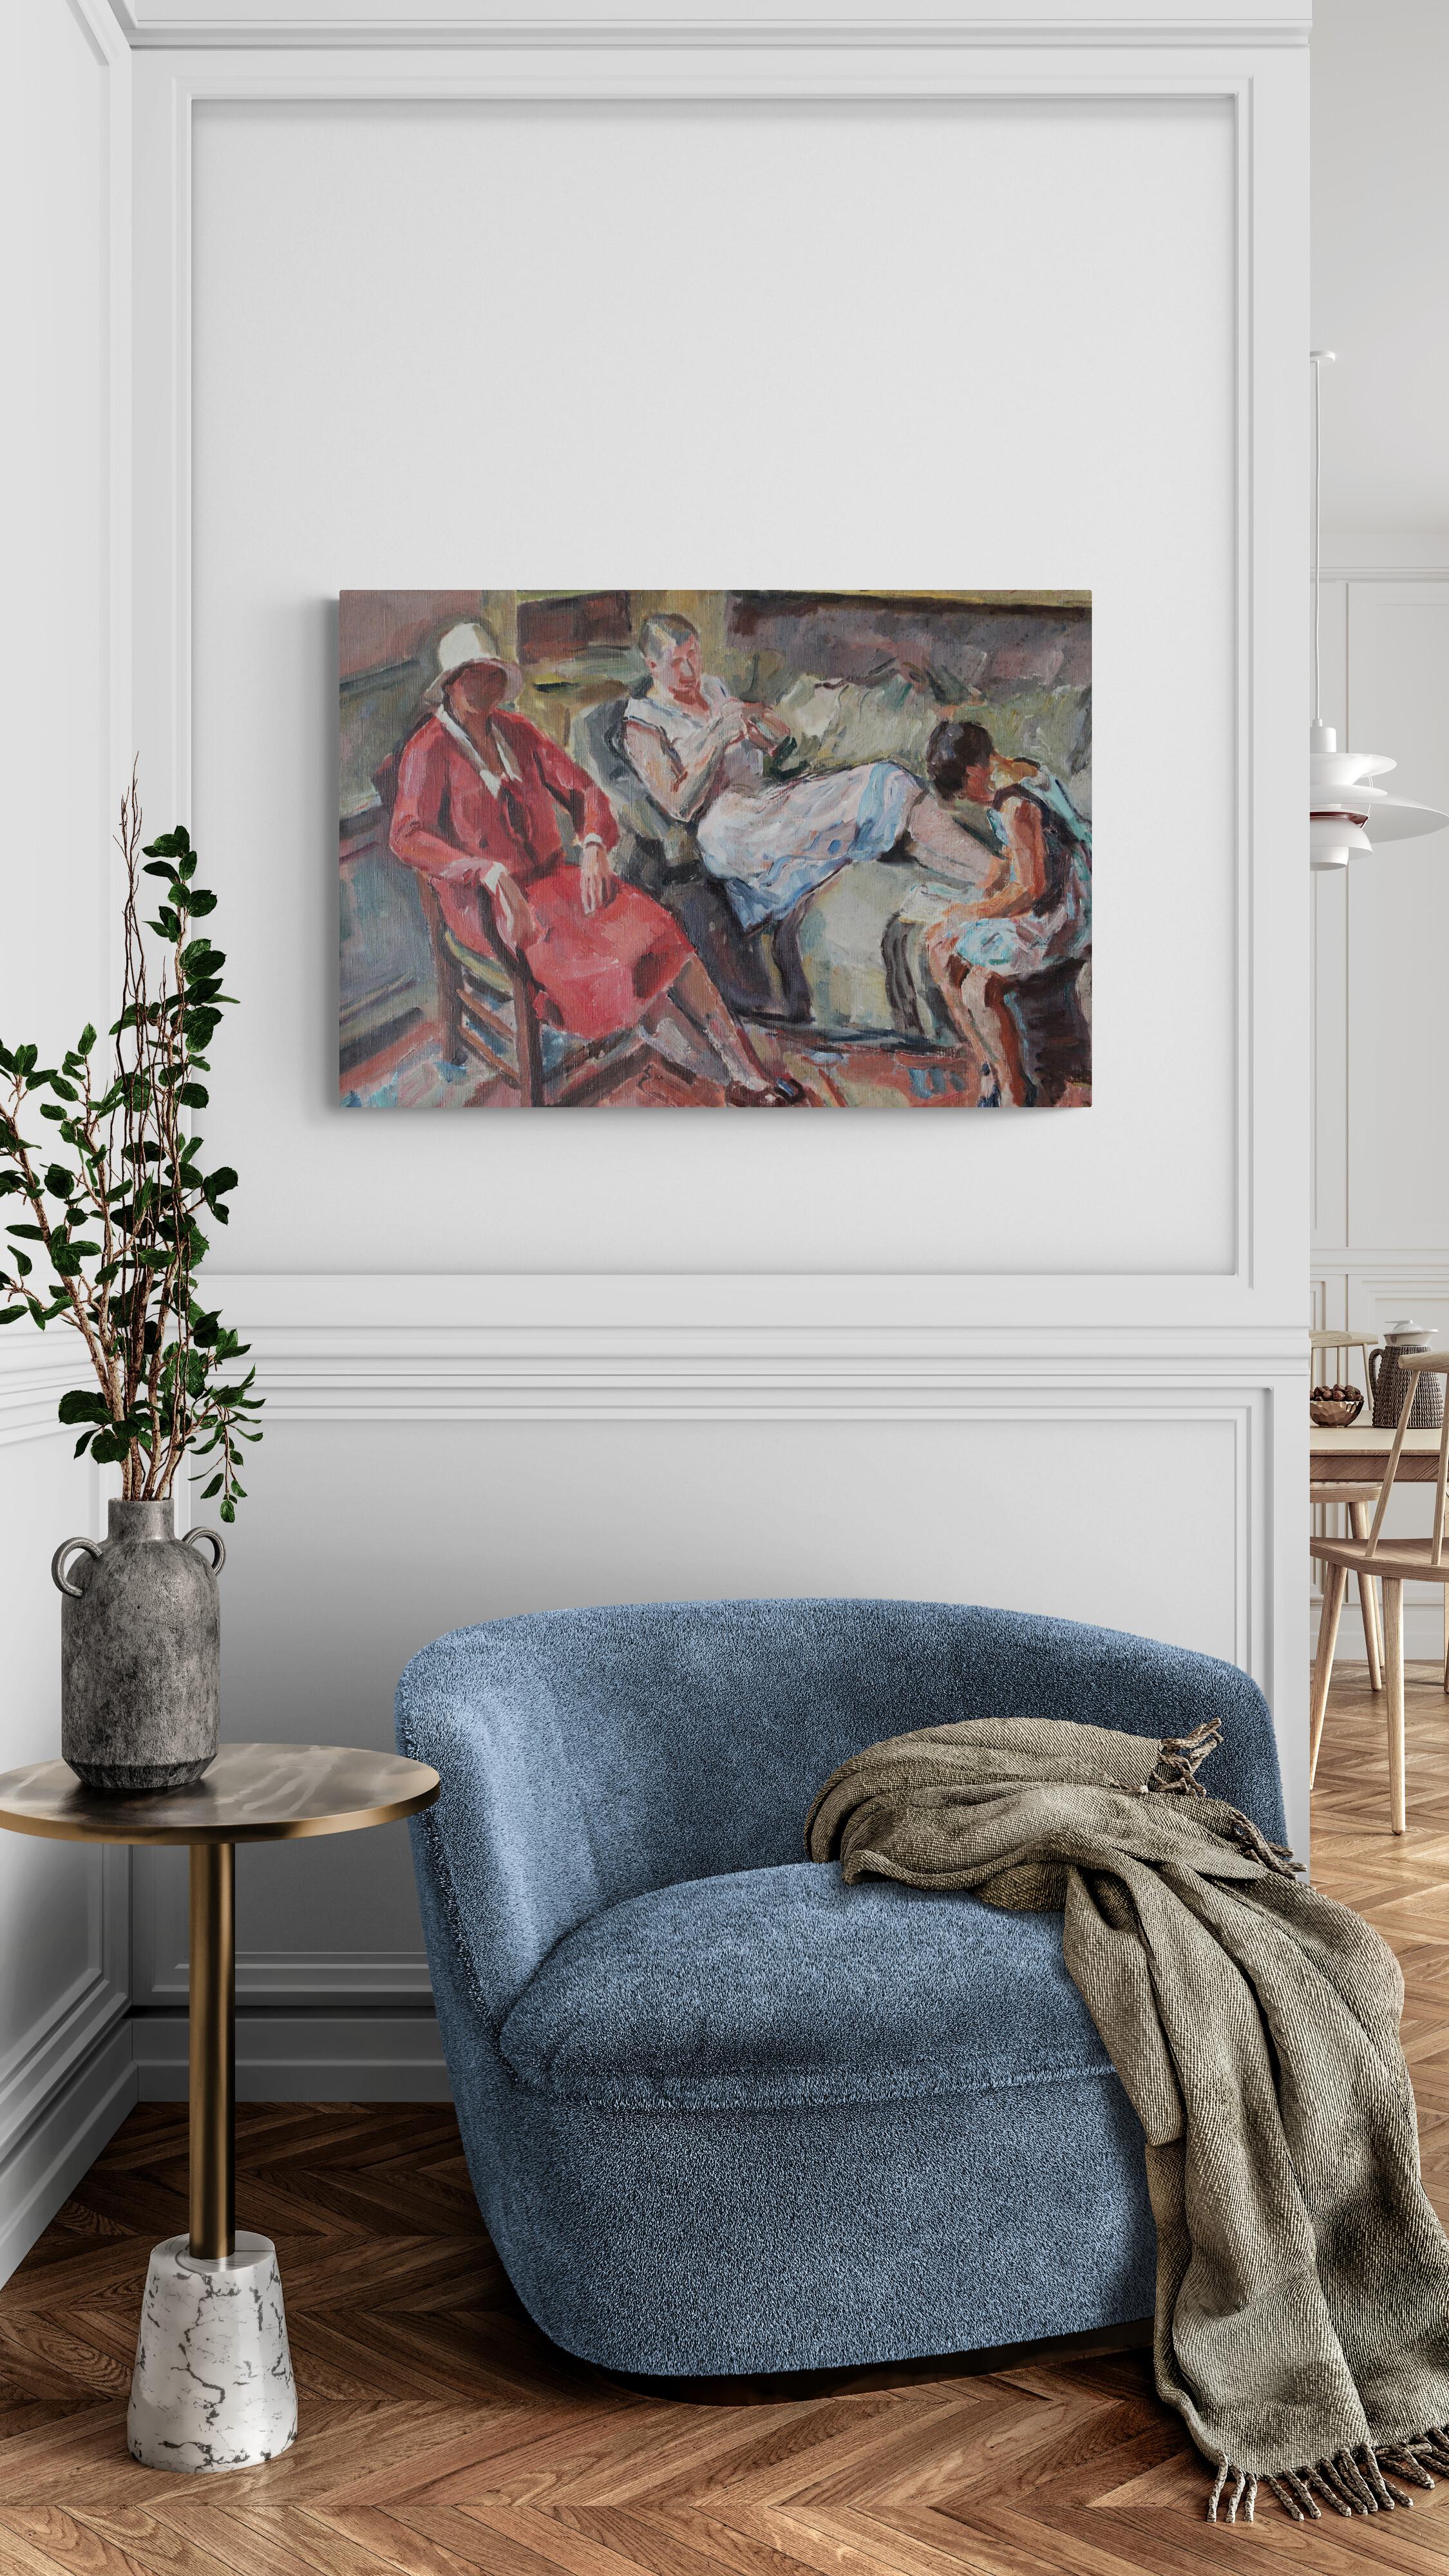 Ancienne peinture à l'huile figurative post impressionniste Art Déco de l'artiste français Bernard Py.  Cette peinture d'intérieur animée de grande taille représentant deux femmes et une fille attire l'attention.  Un tableau coloré où l'artiste a